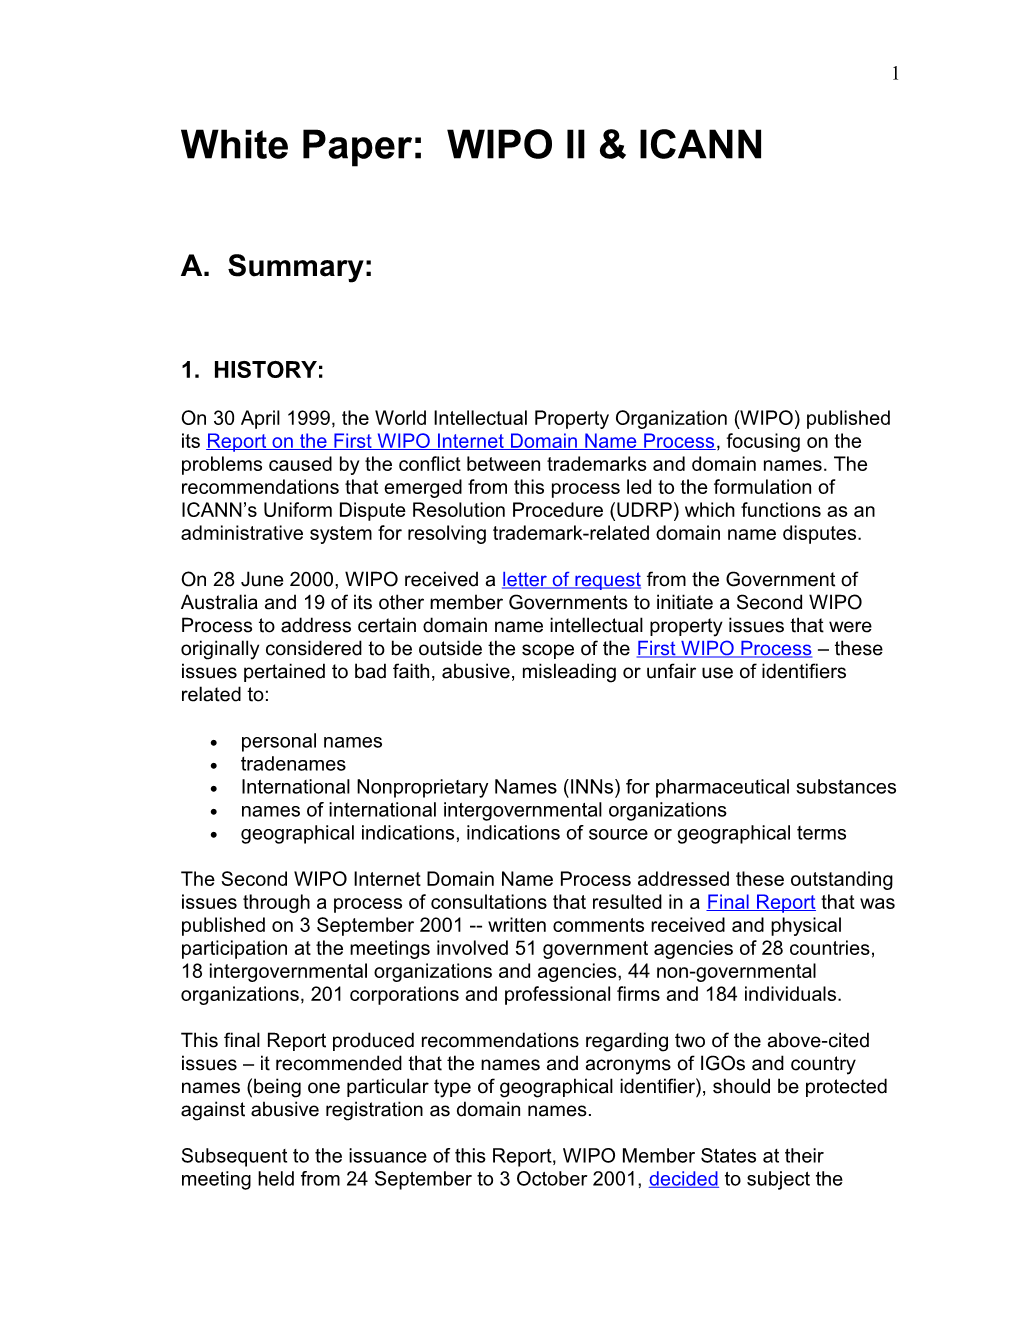 White Paper: WIPO II & ICANN